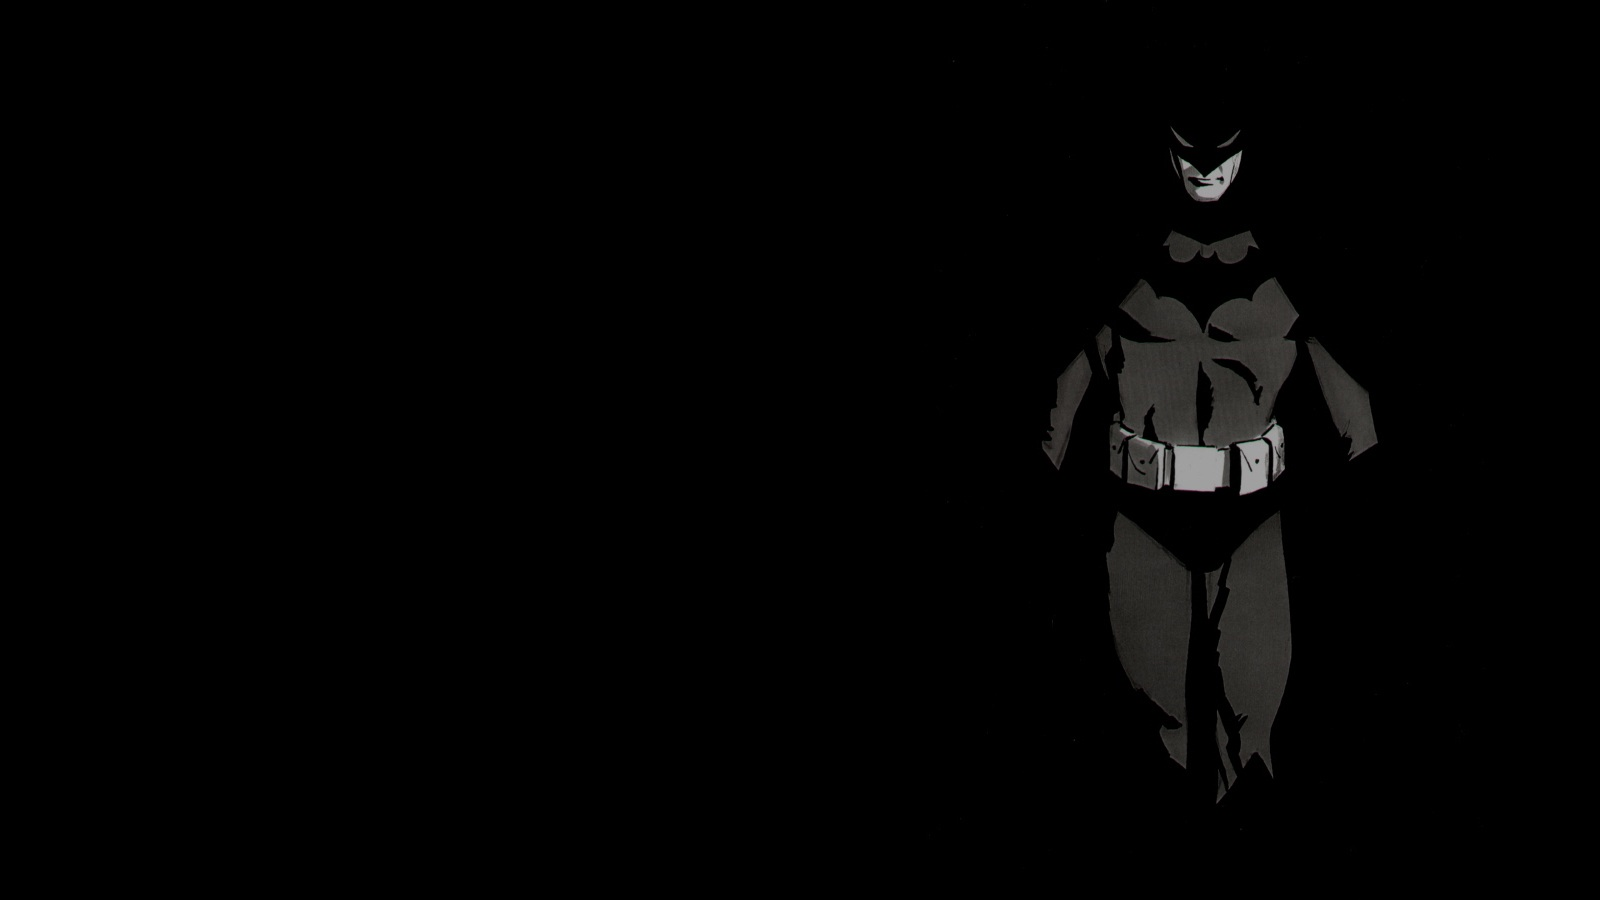 Batman Wallpaper For Computer